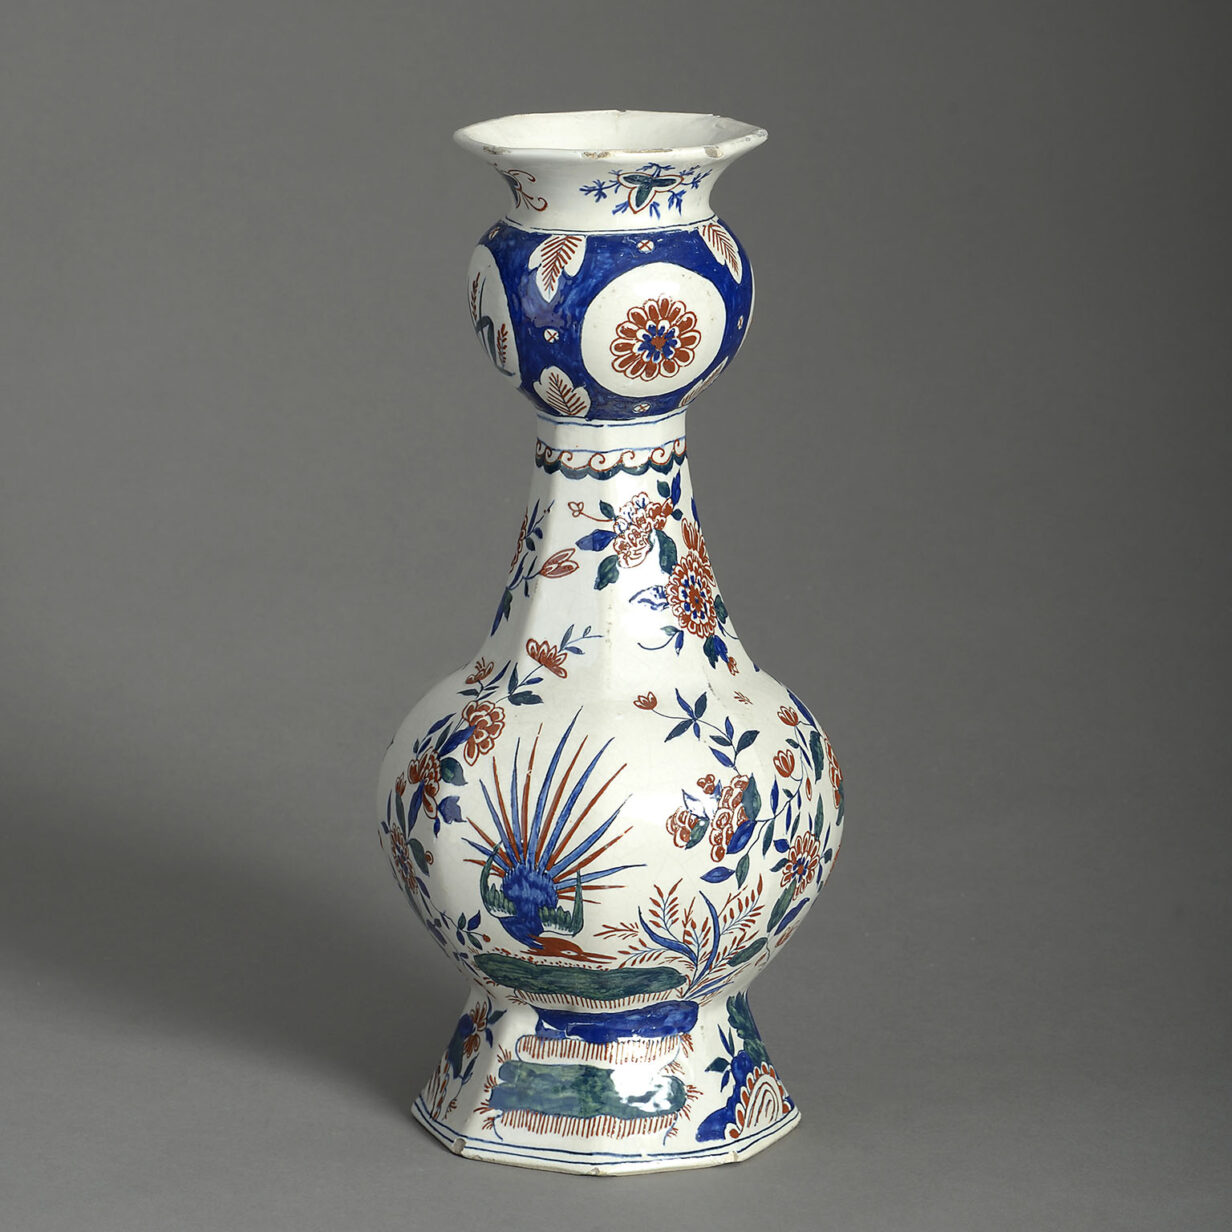 18th century polychrome delft pottery garlic neck vase